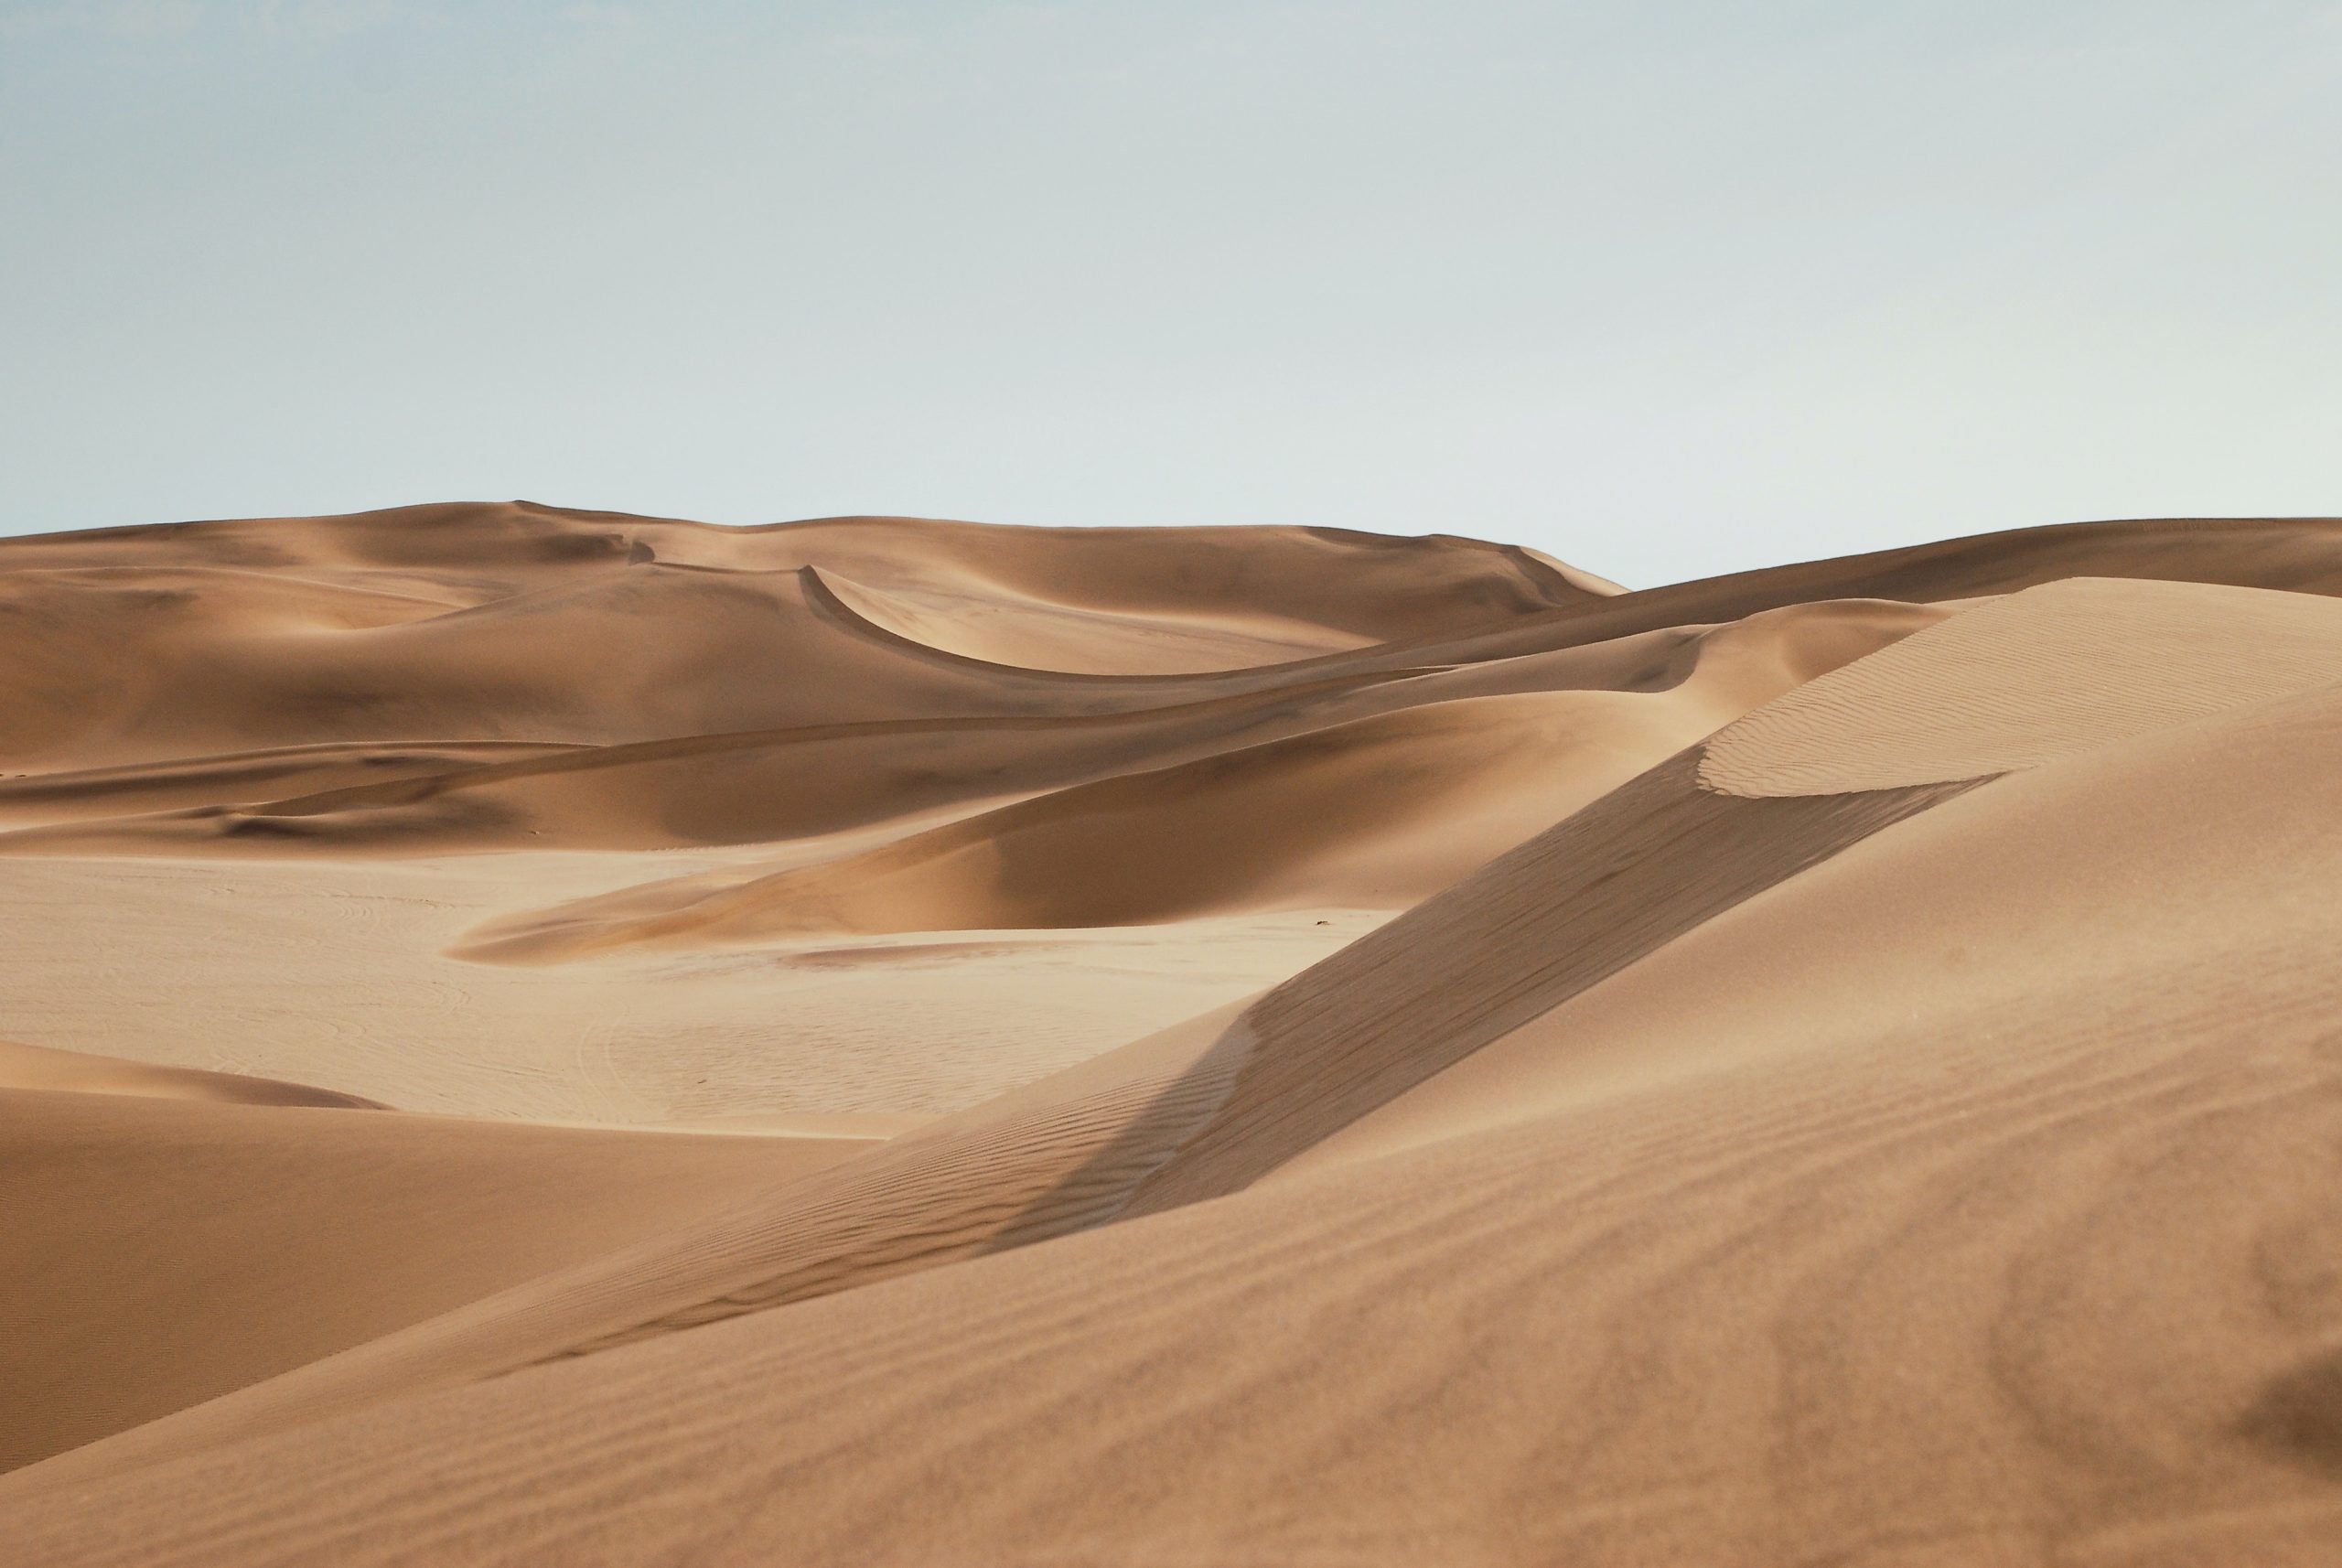 [PRODUÇÃO]Sonhar com areia - INDICA muitas MUDANÇAS descubra o SIGNIFICADO (Imagem: Keith Hardy/ Unsplash)